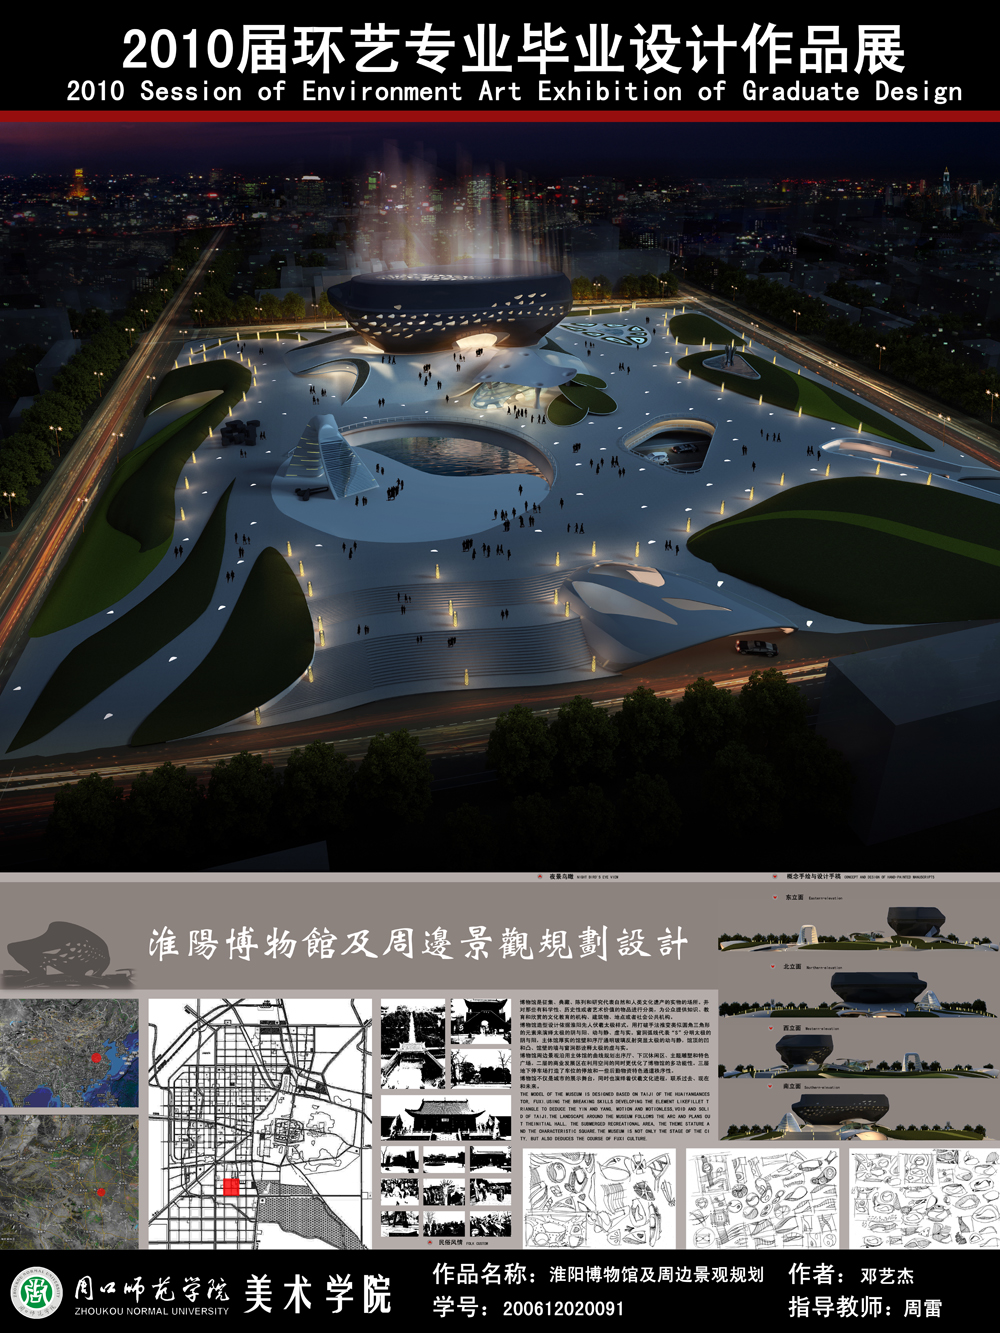 淮阳博物馆及周边景观规划设计-1